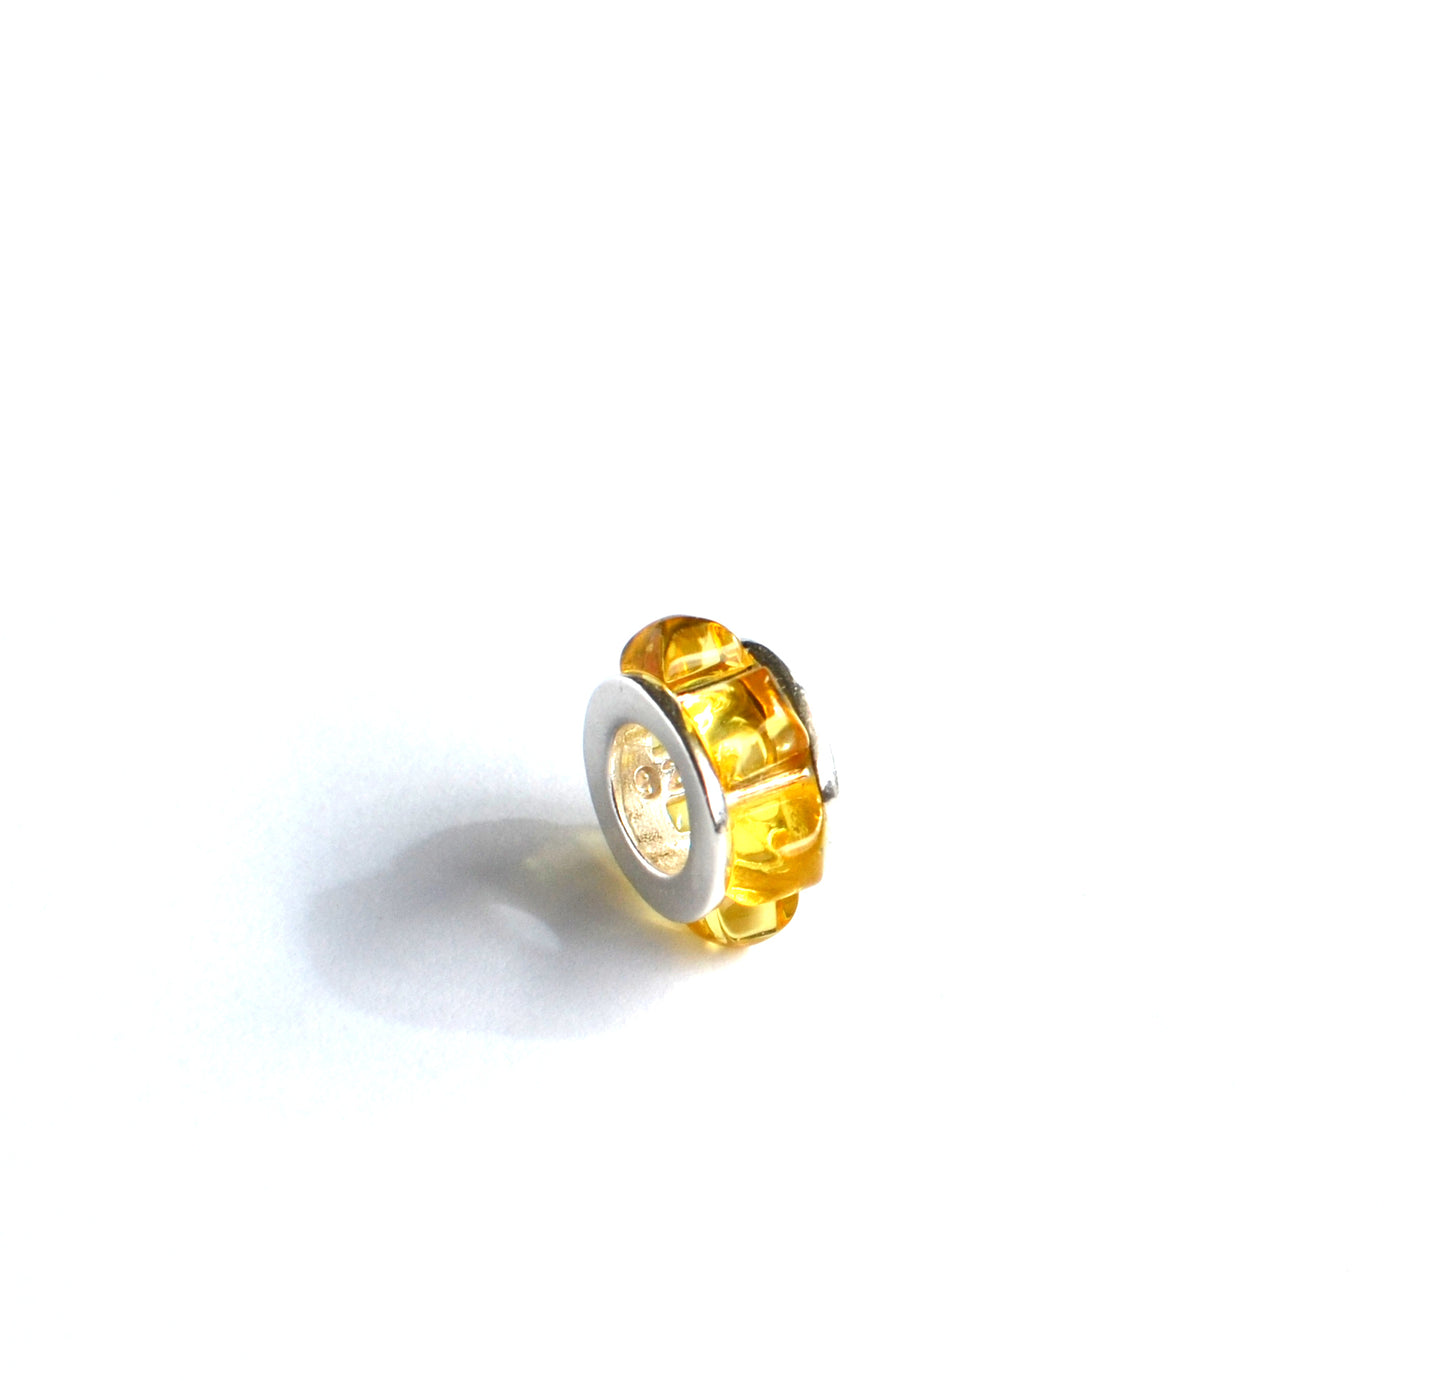 Yellow Amber Beads Charm